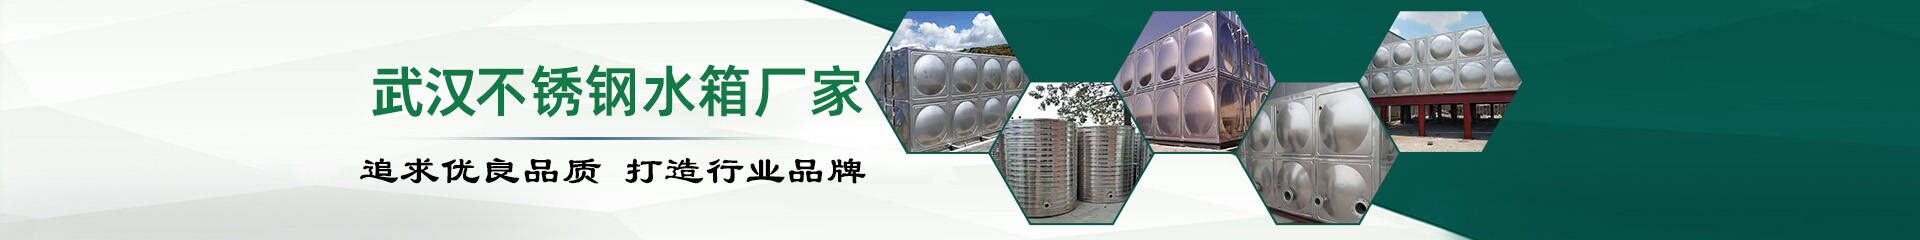 变频恒压供水设备_武汉不锈钢水箱厂家联系方式